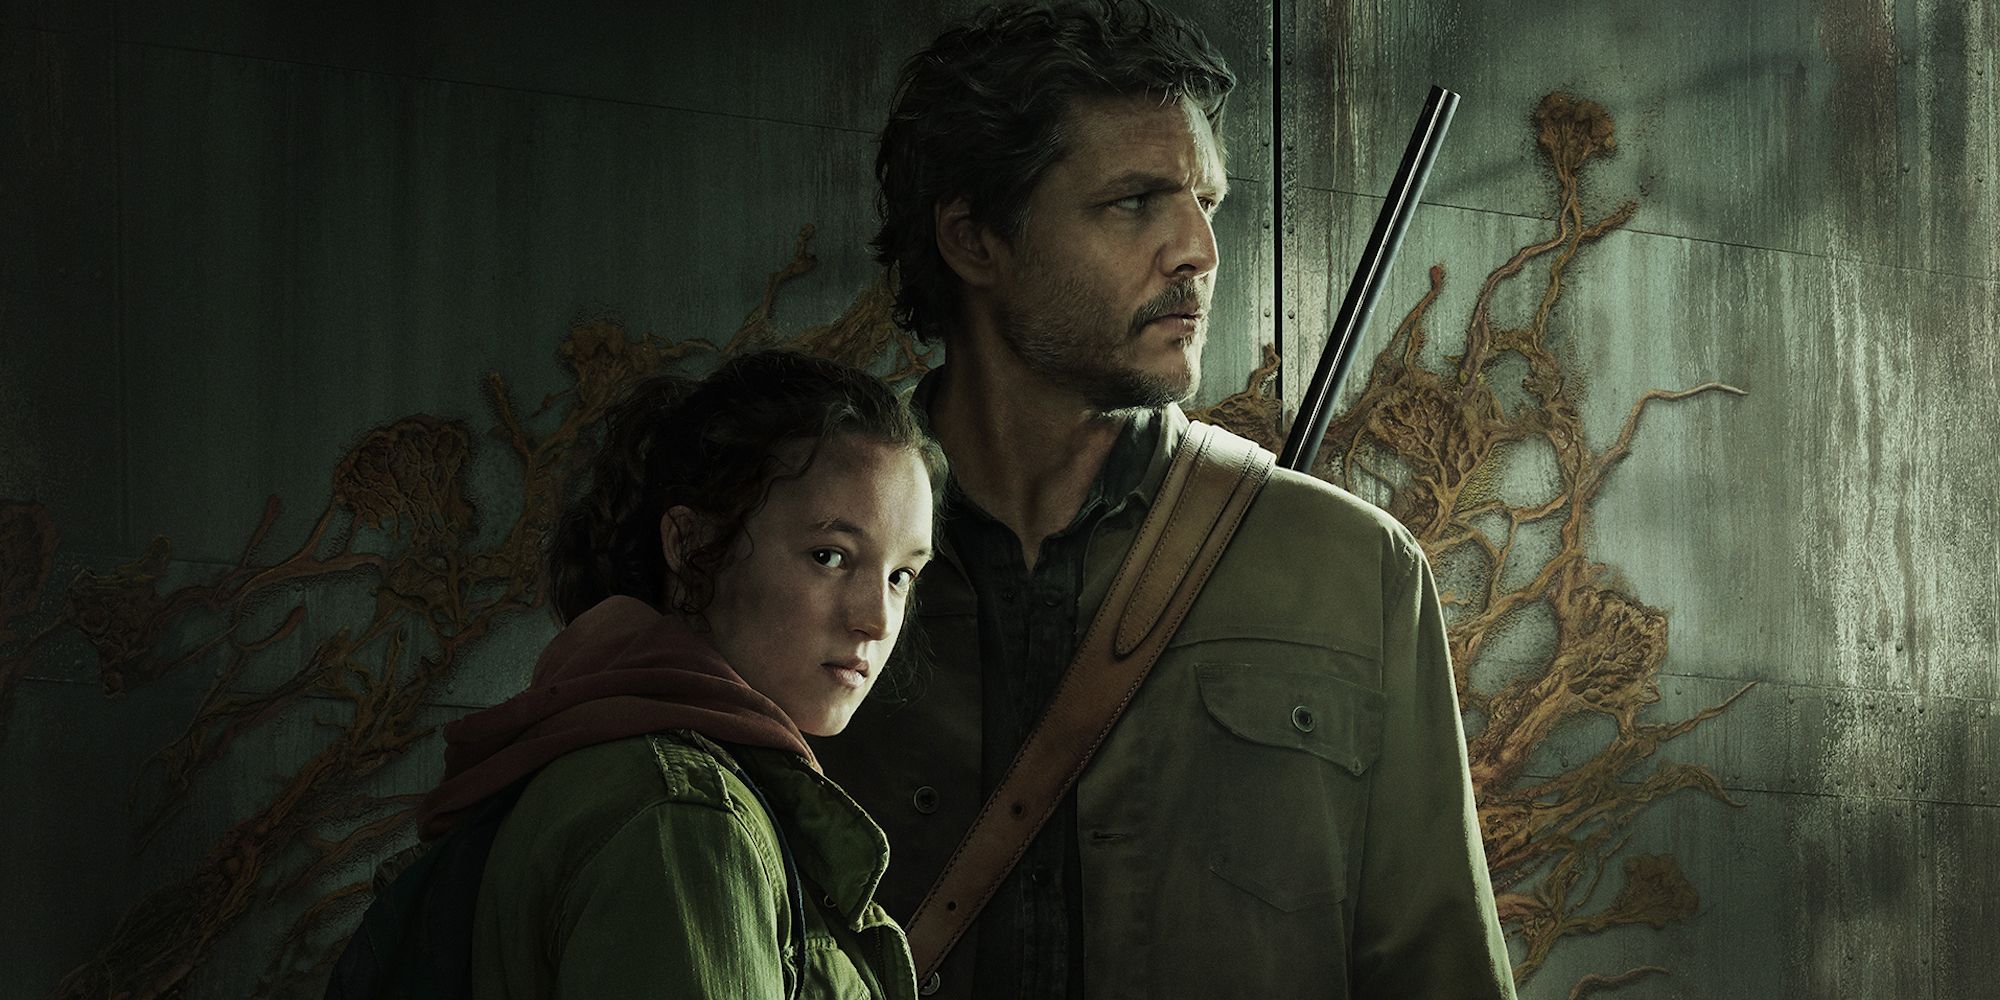 Pedro Pascal dans le rôle de Joel et Bella Ramsey dans le rôle d'Ellie dans une image de promotion de The Last of Us.